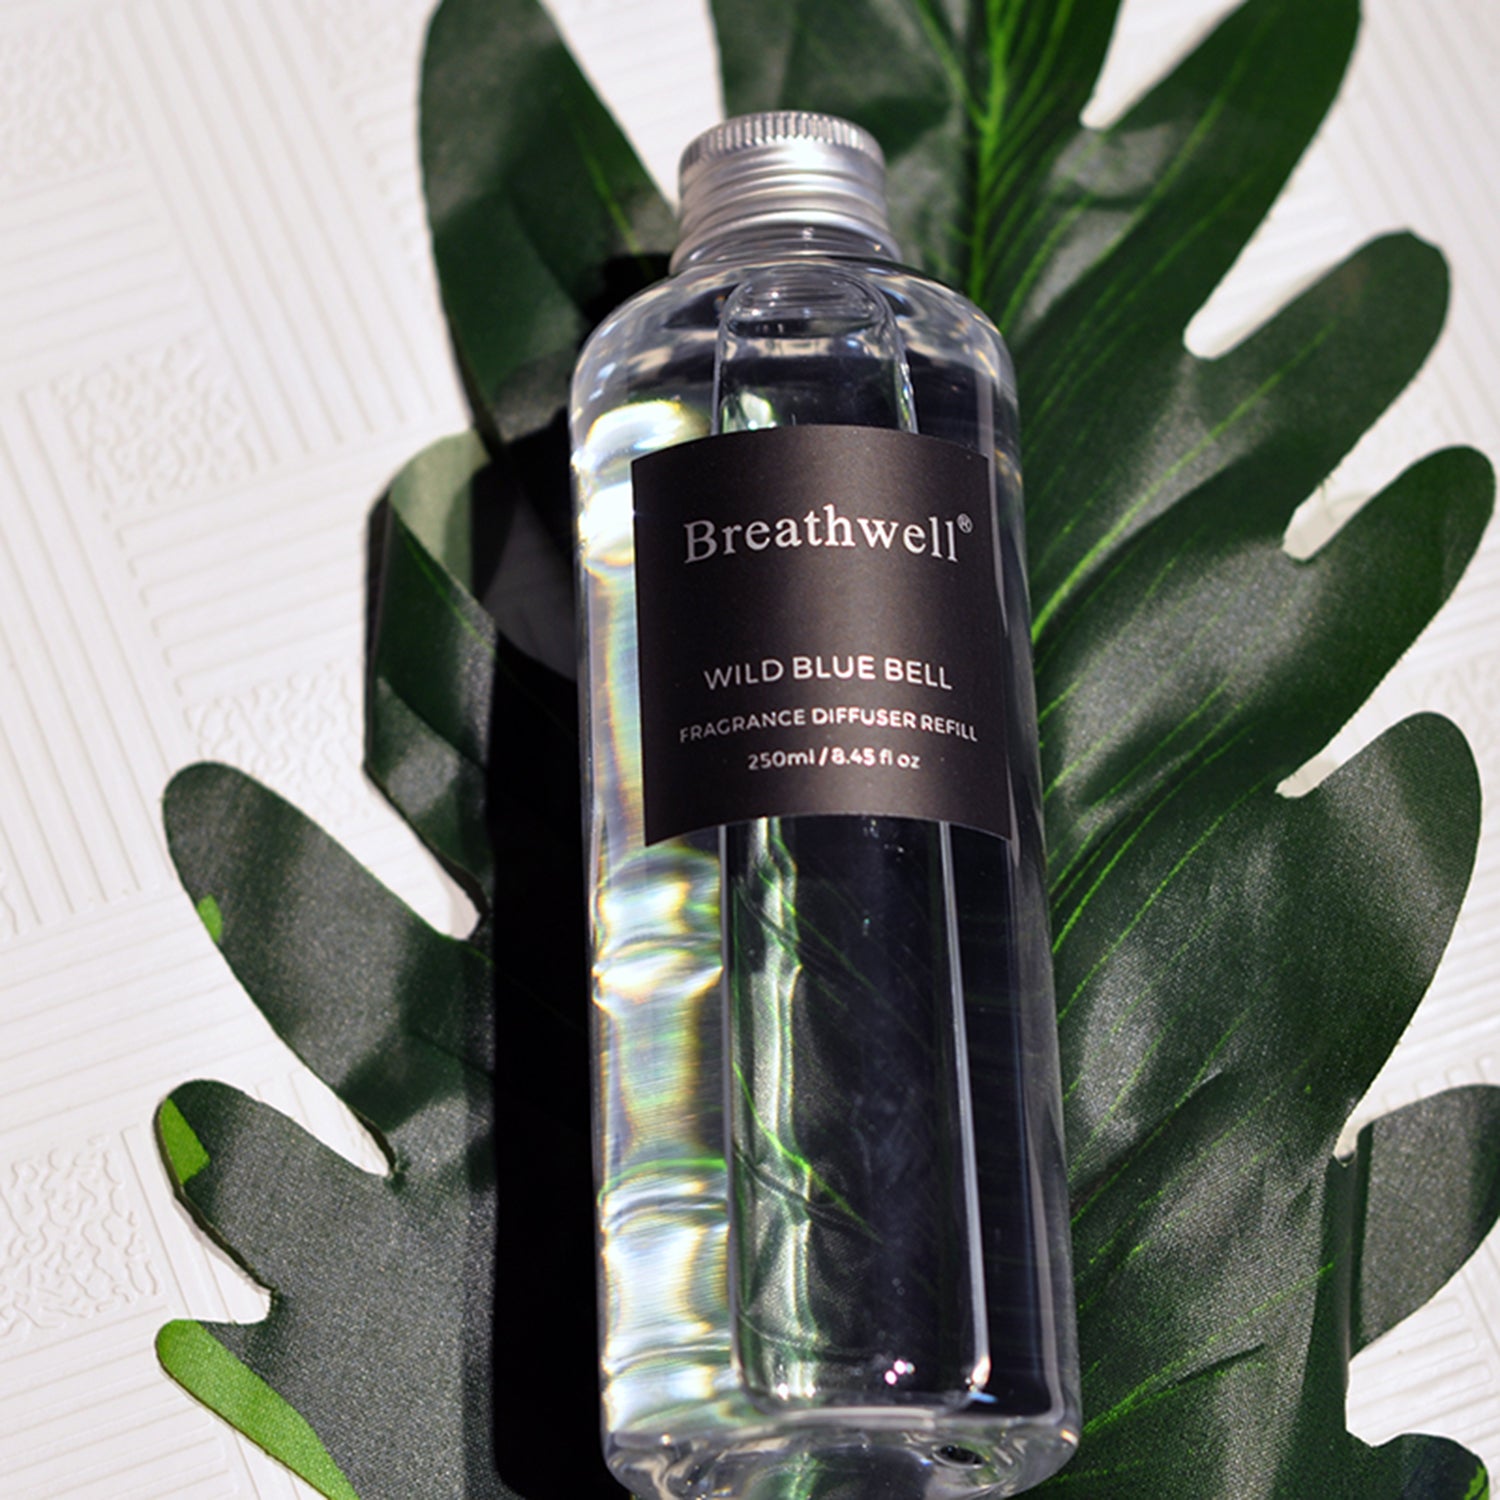 Breathwell Premium Essential Oil 250ML Aromatherapy Reed Diffuser Refill Reed Diffuser Refill Breathwell 